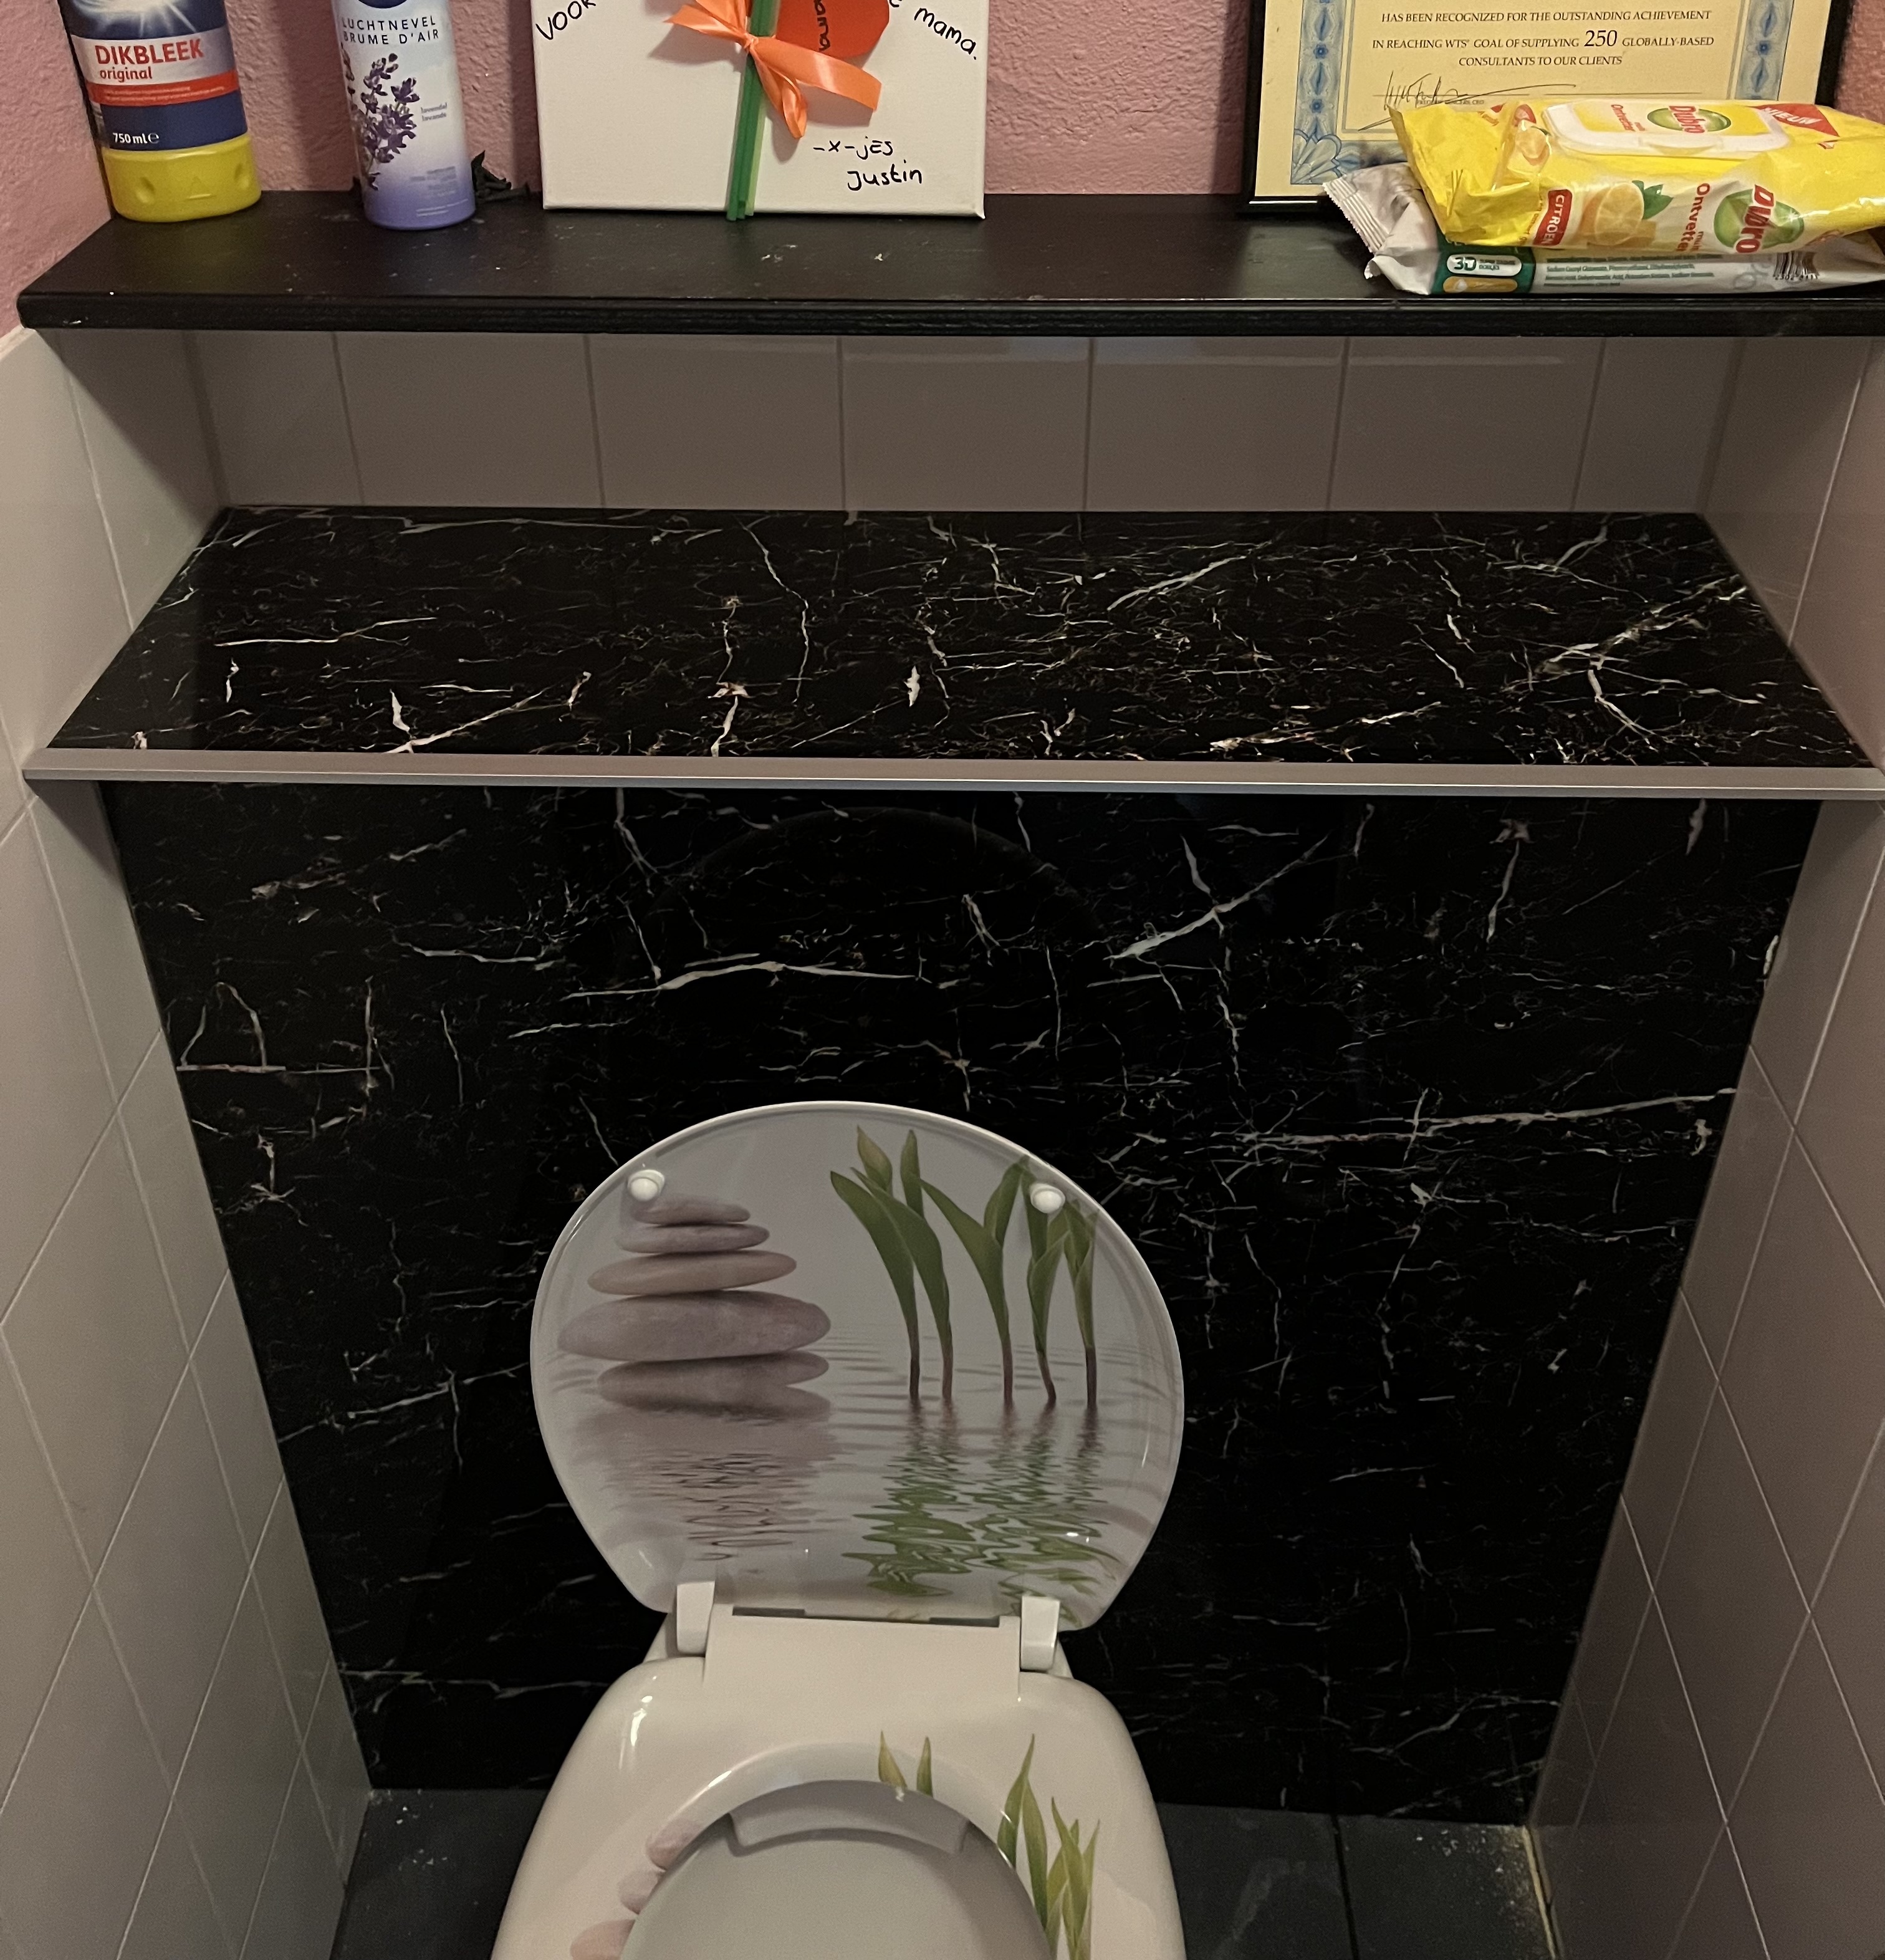 Uitdaging Kinderen Motivatie Voorzetwand in WC met luxe wandpanelen in marmerlook - OPMAATZAGEN.nl